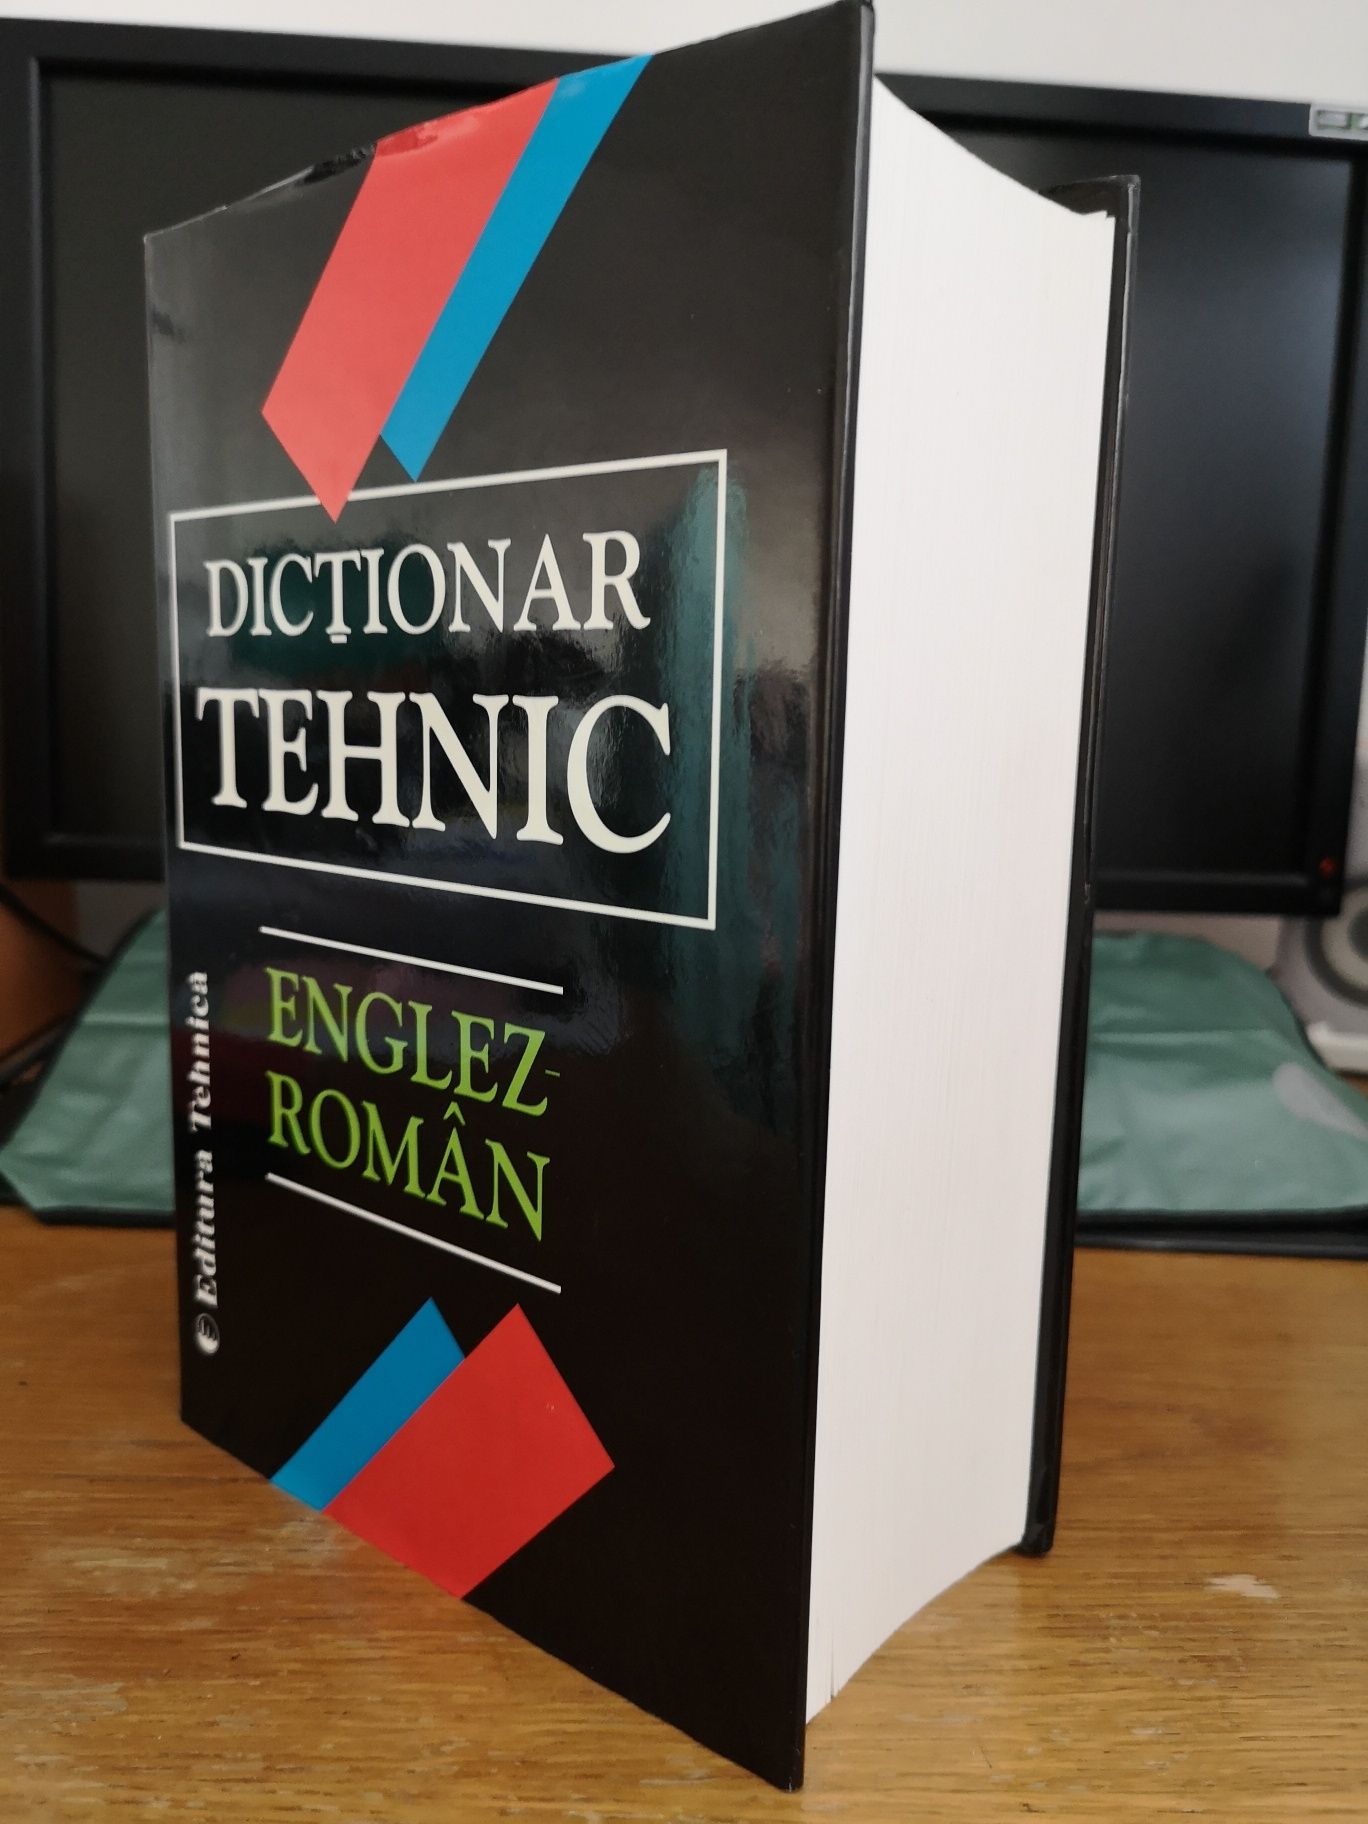 Dictionar tehnic Englez-Roman, editura Tehnica Bucuresti 1997, nou